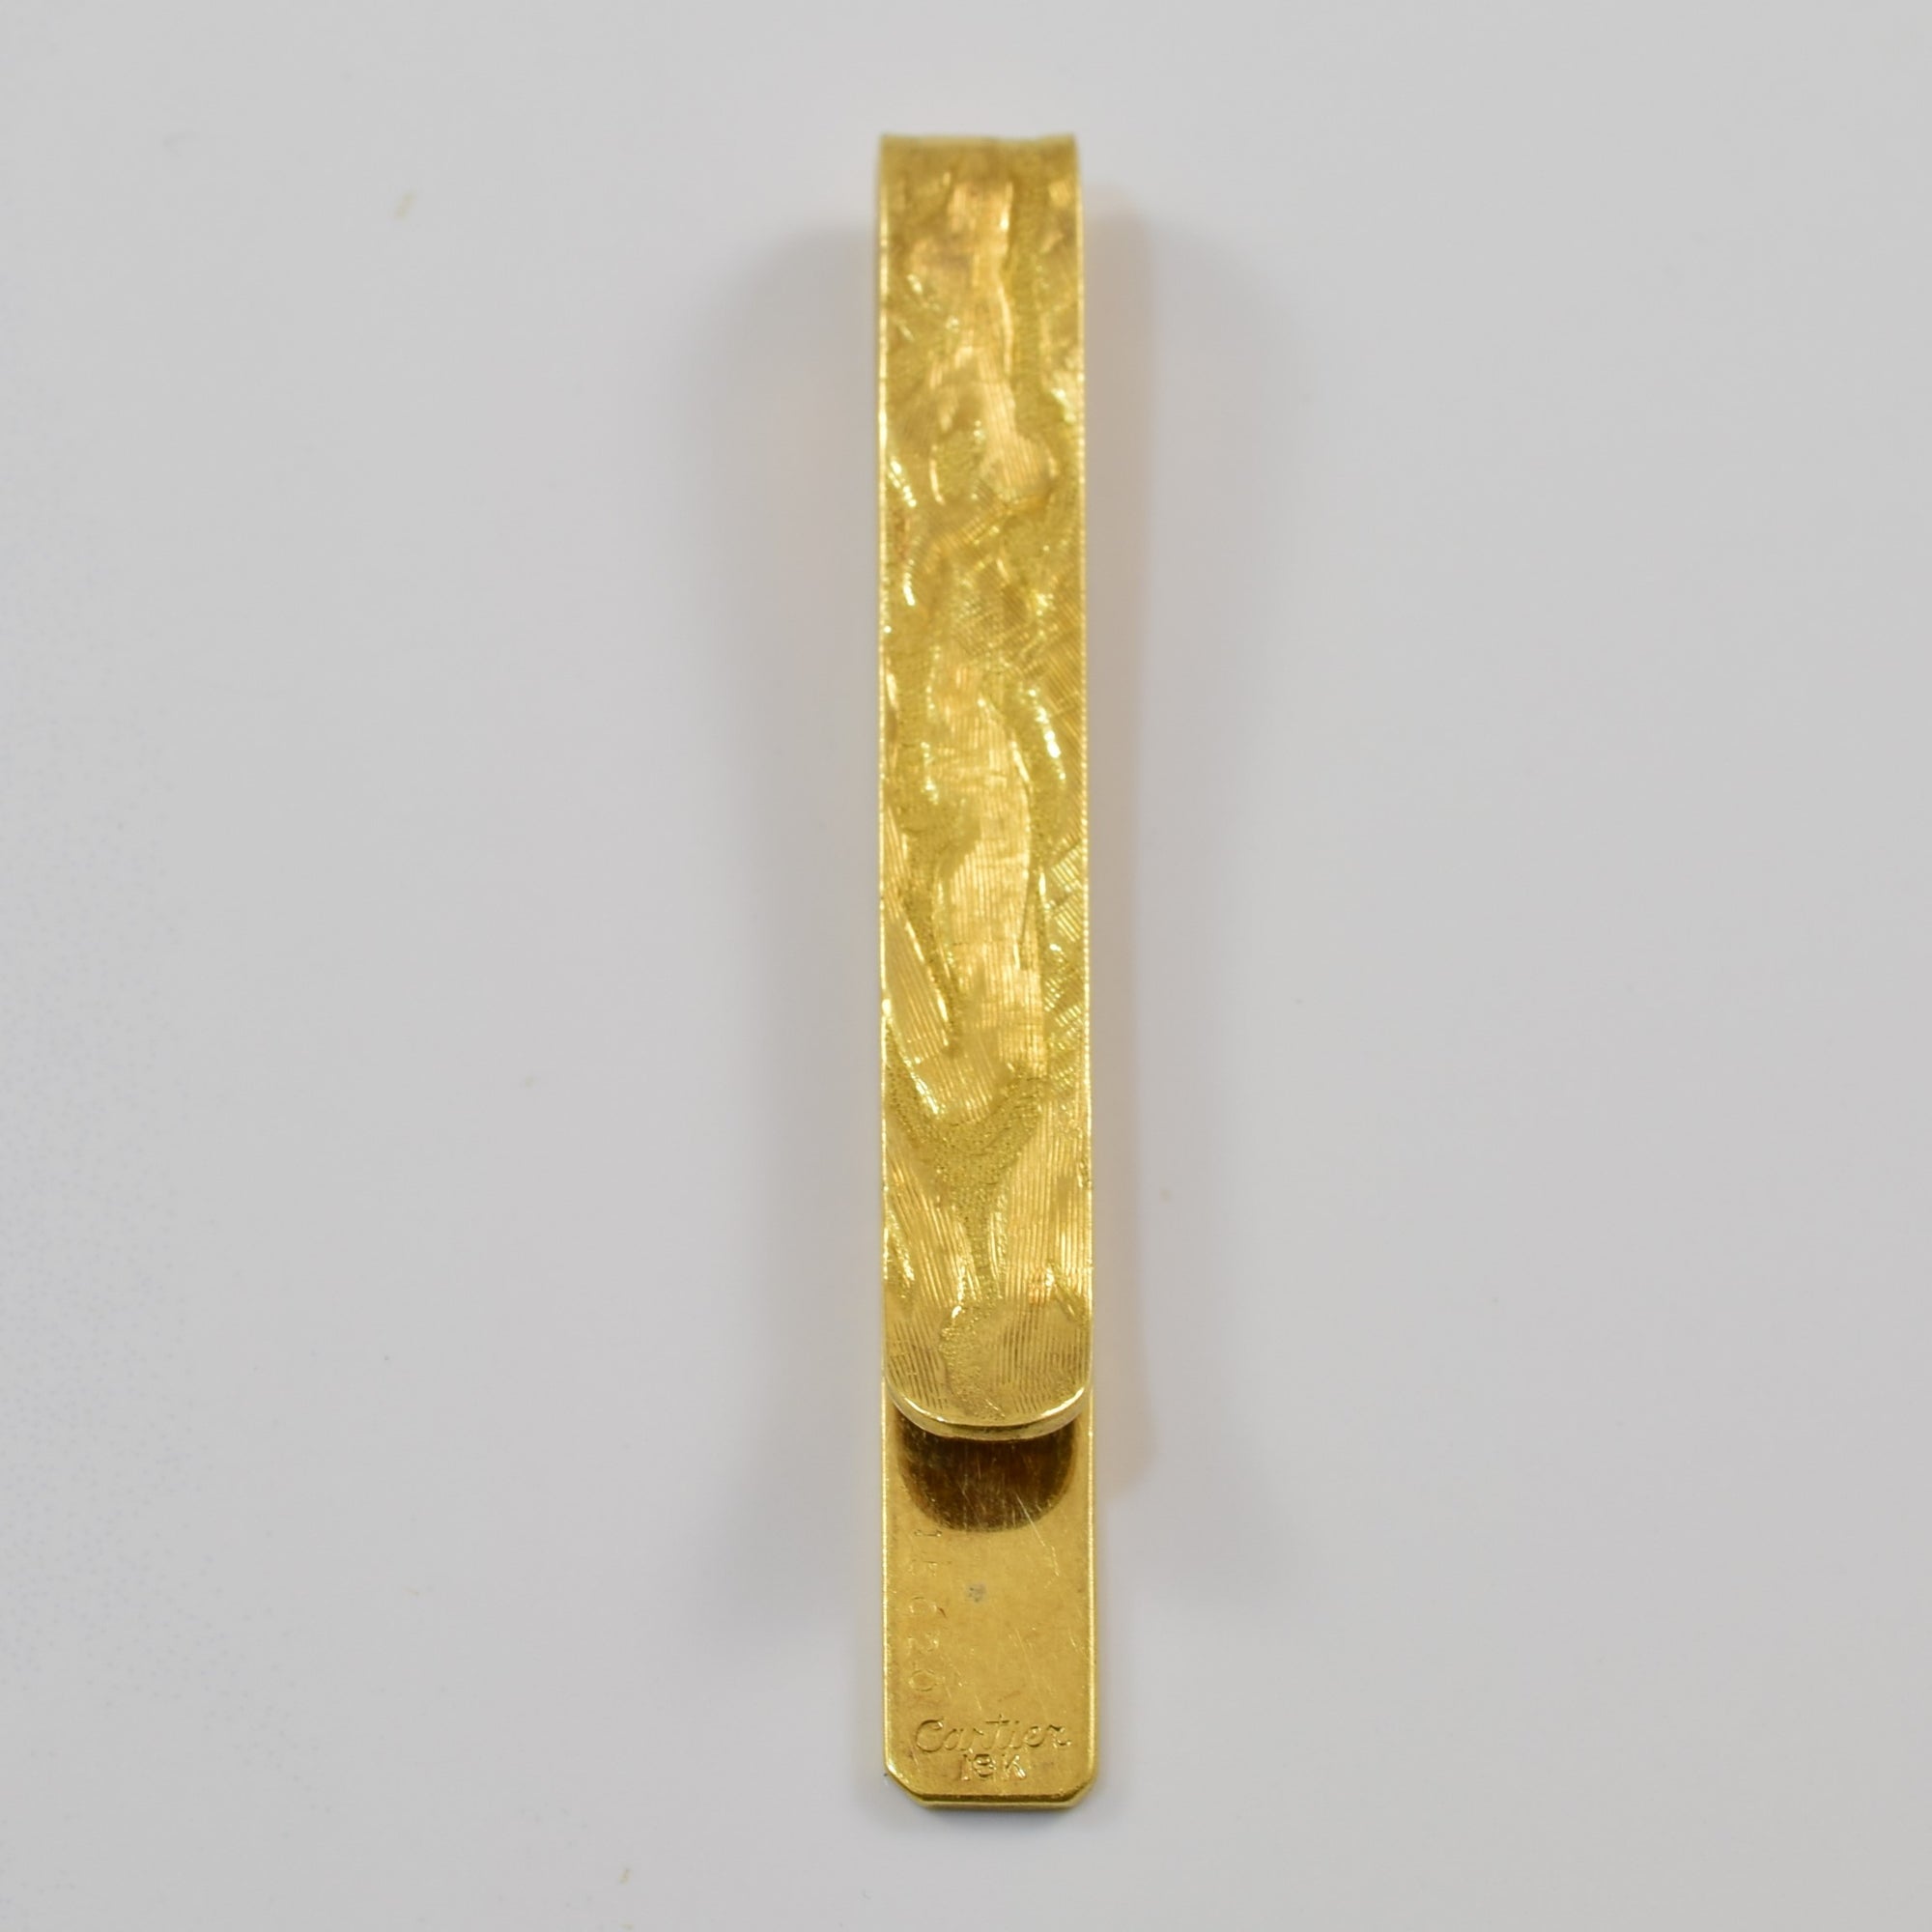 'Cartier' Gold Tie Clip